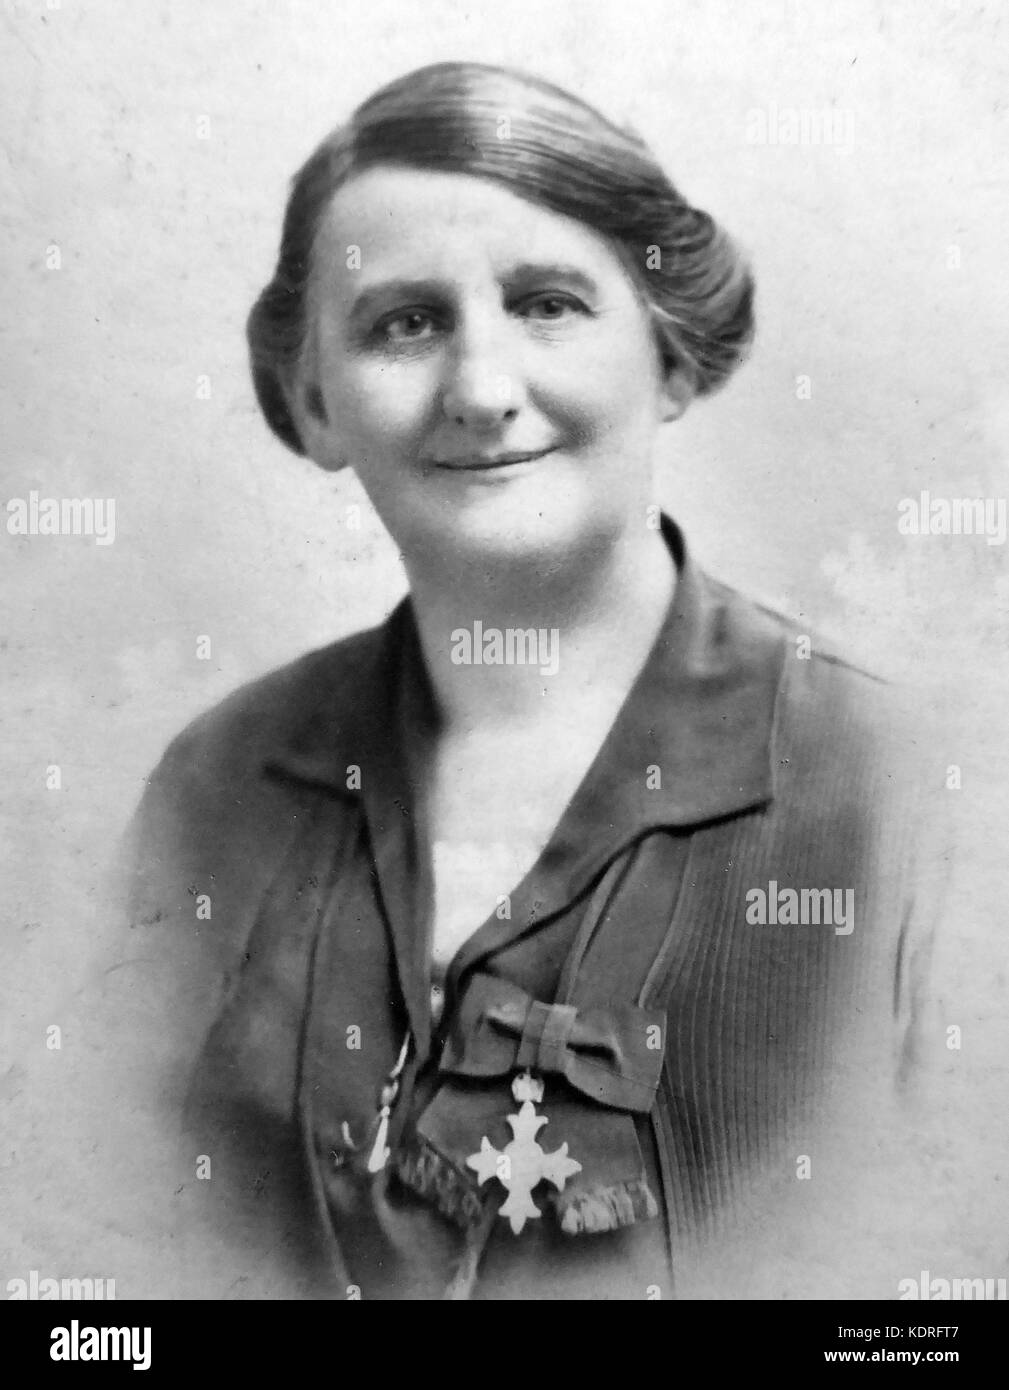 Laura ANNIE WILSON (1877-1942) ingeniera inglesa y sufragánea con su premio MBE en 1918 Foto de stock